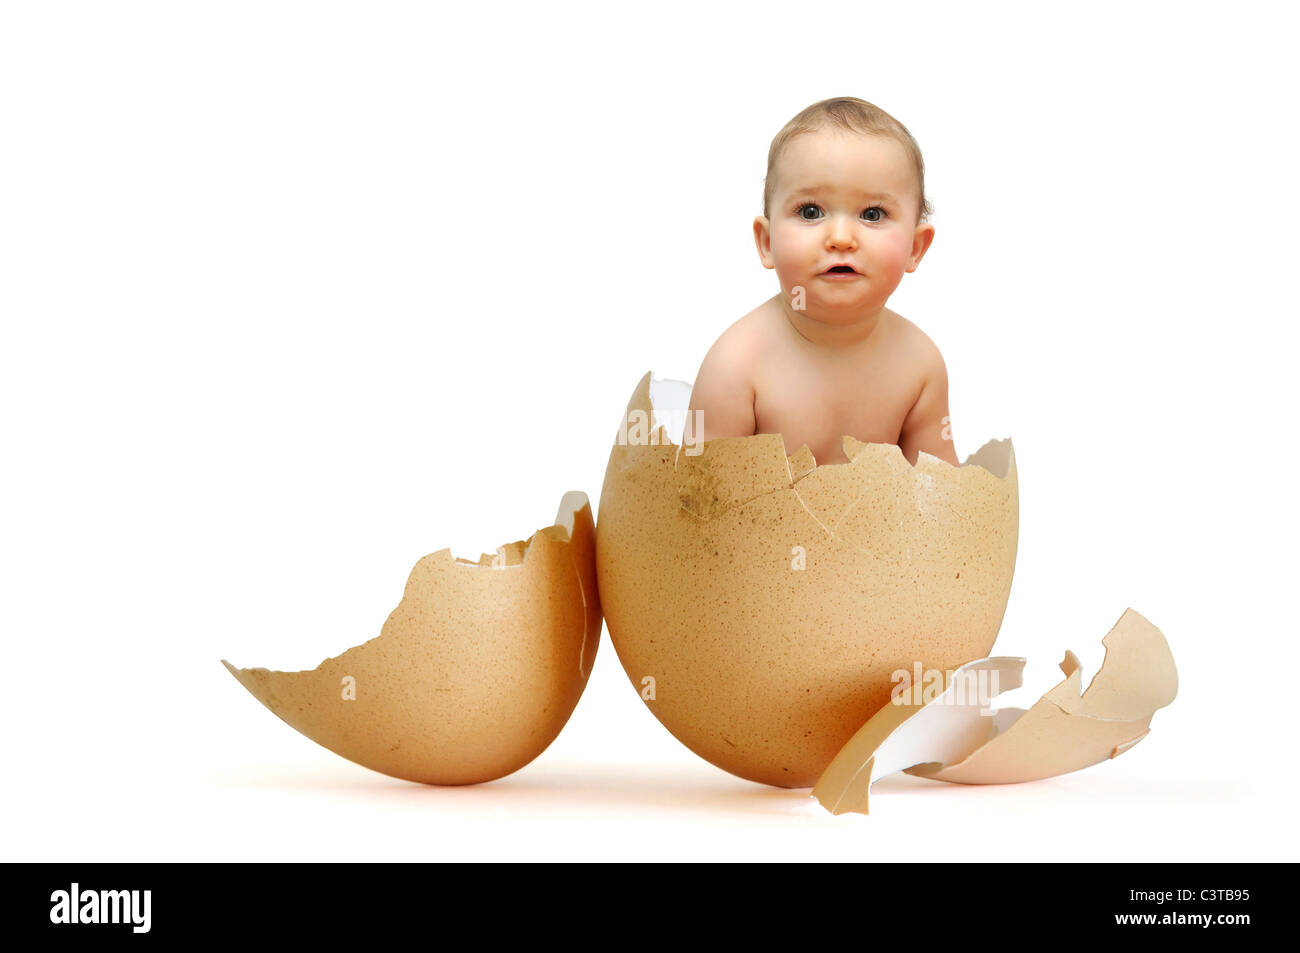 Bebe en huevo Imágenes recortadas de stock - Alamy